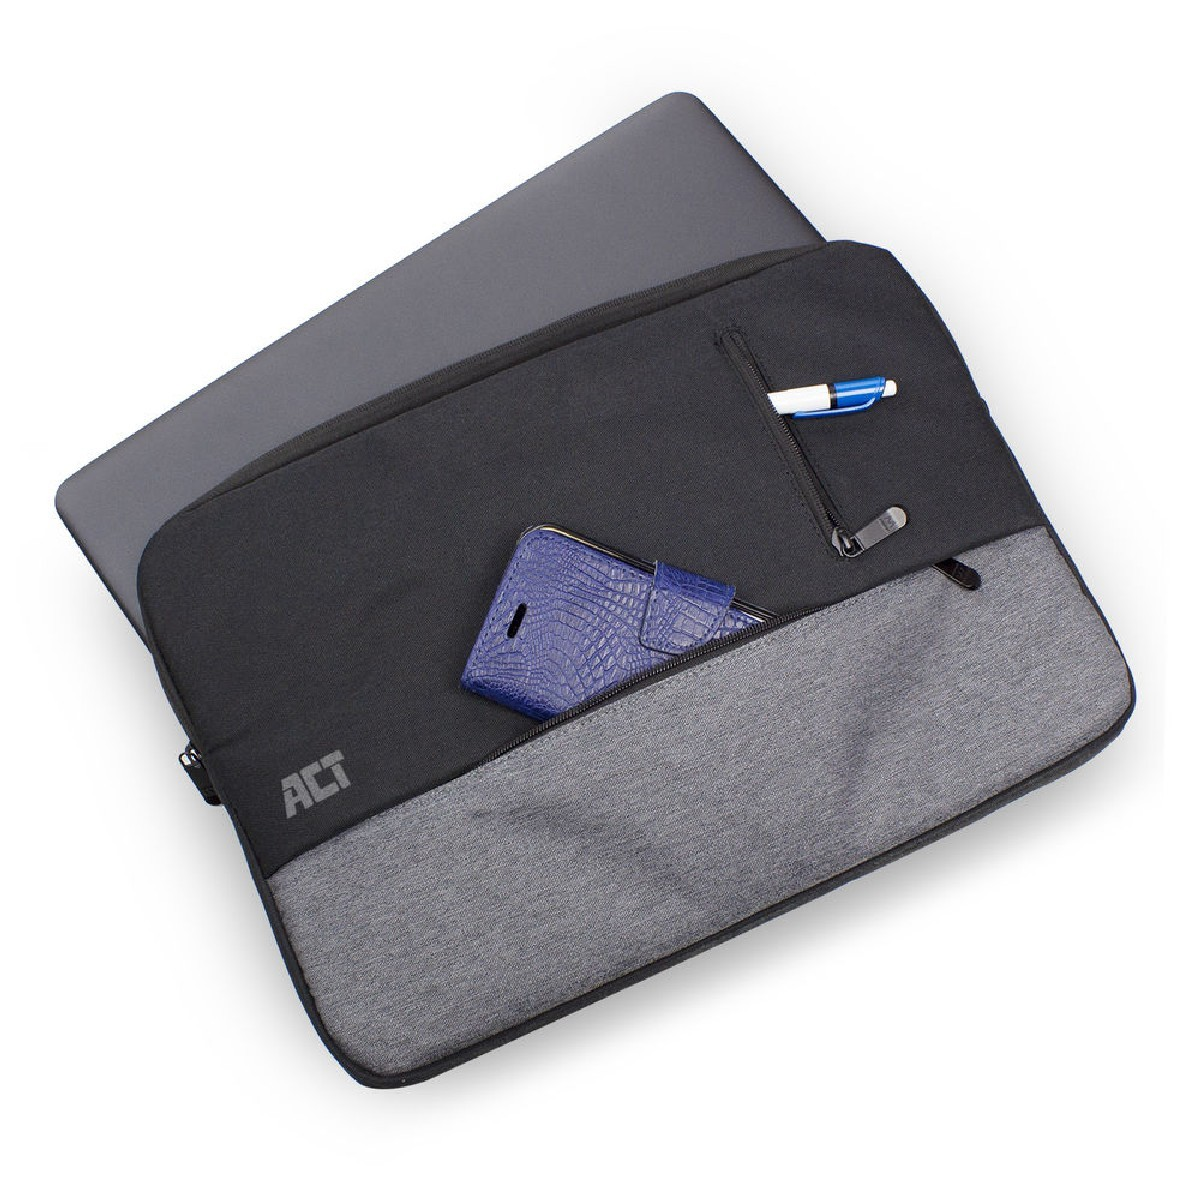 Sleeve für universal Polyester, AC8545 Laptop-Tasche Notebooktasche ACT schwarz